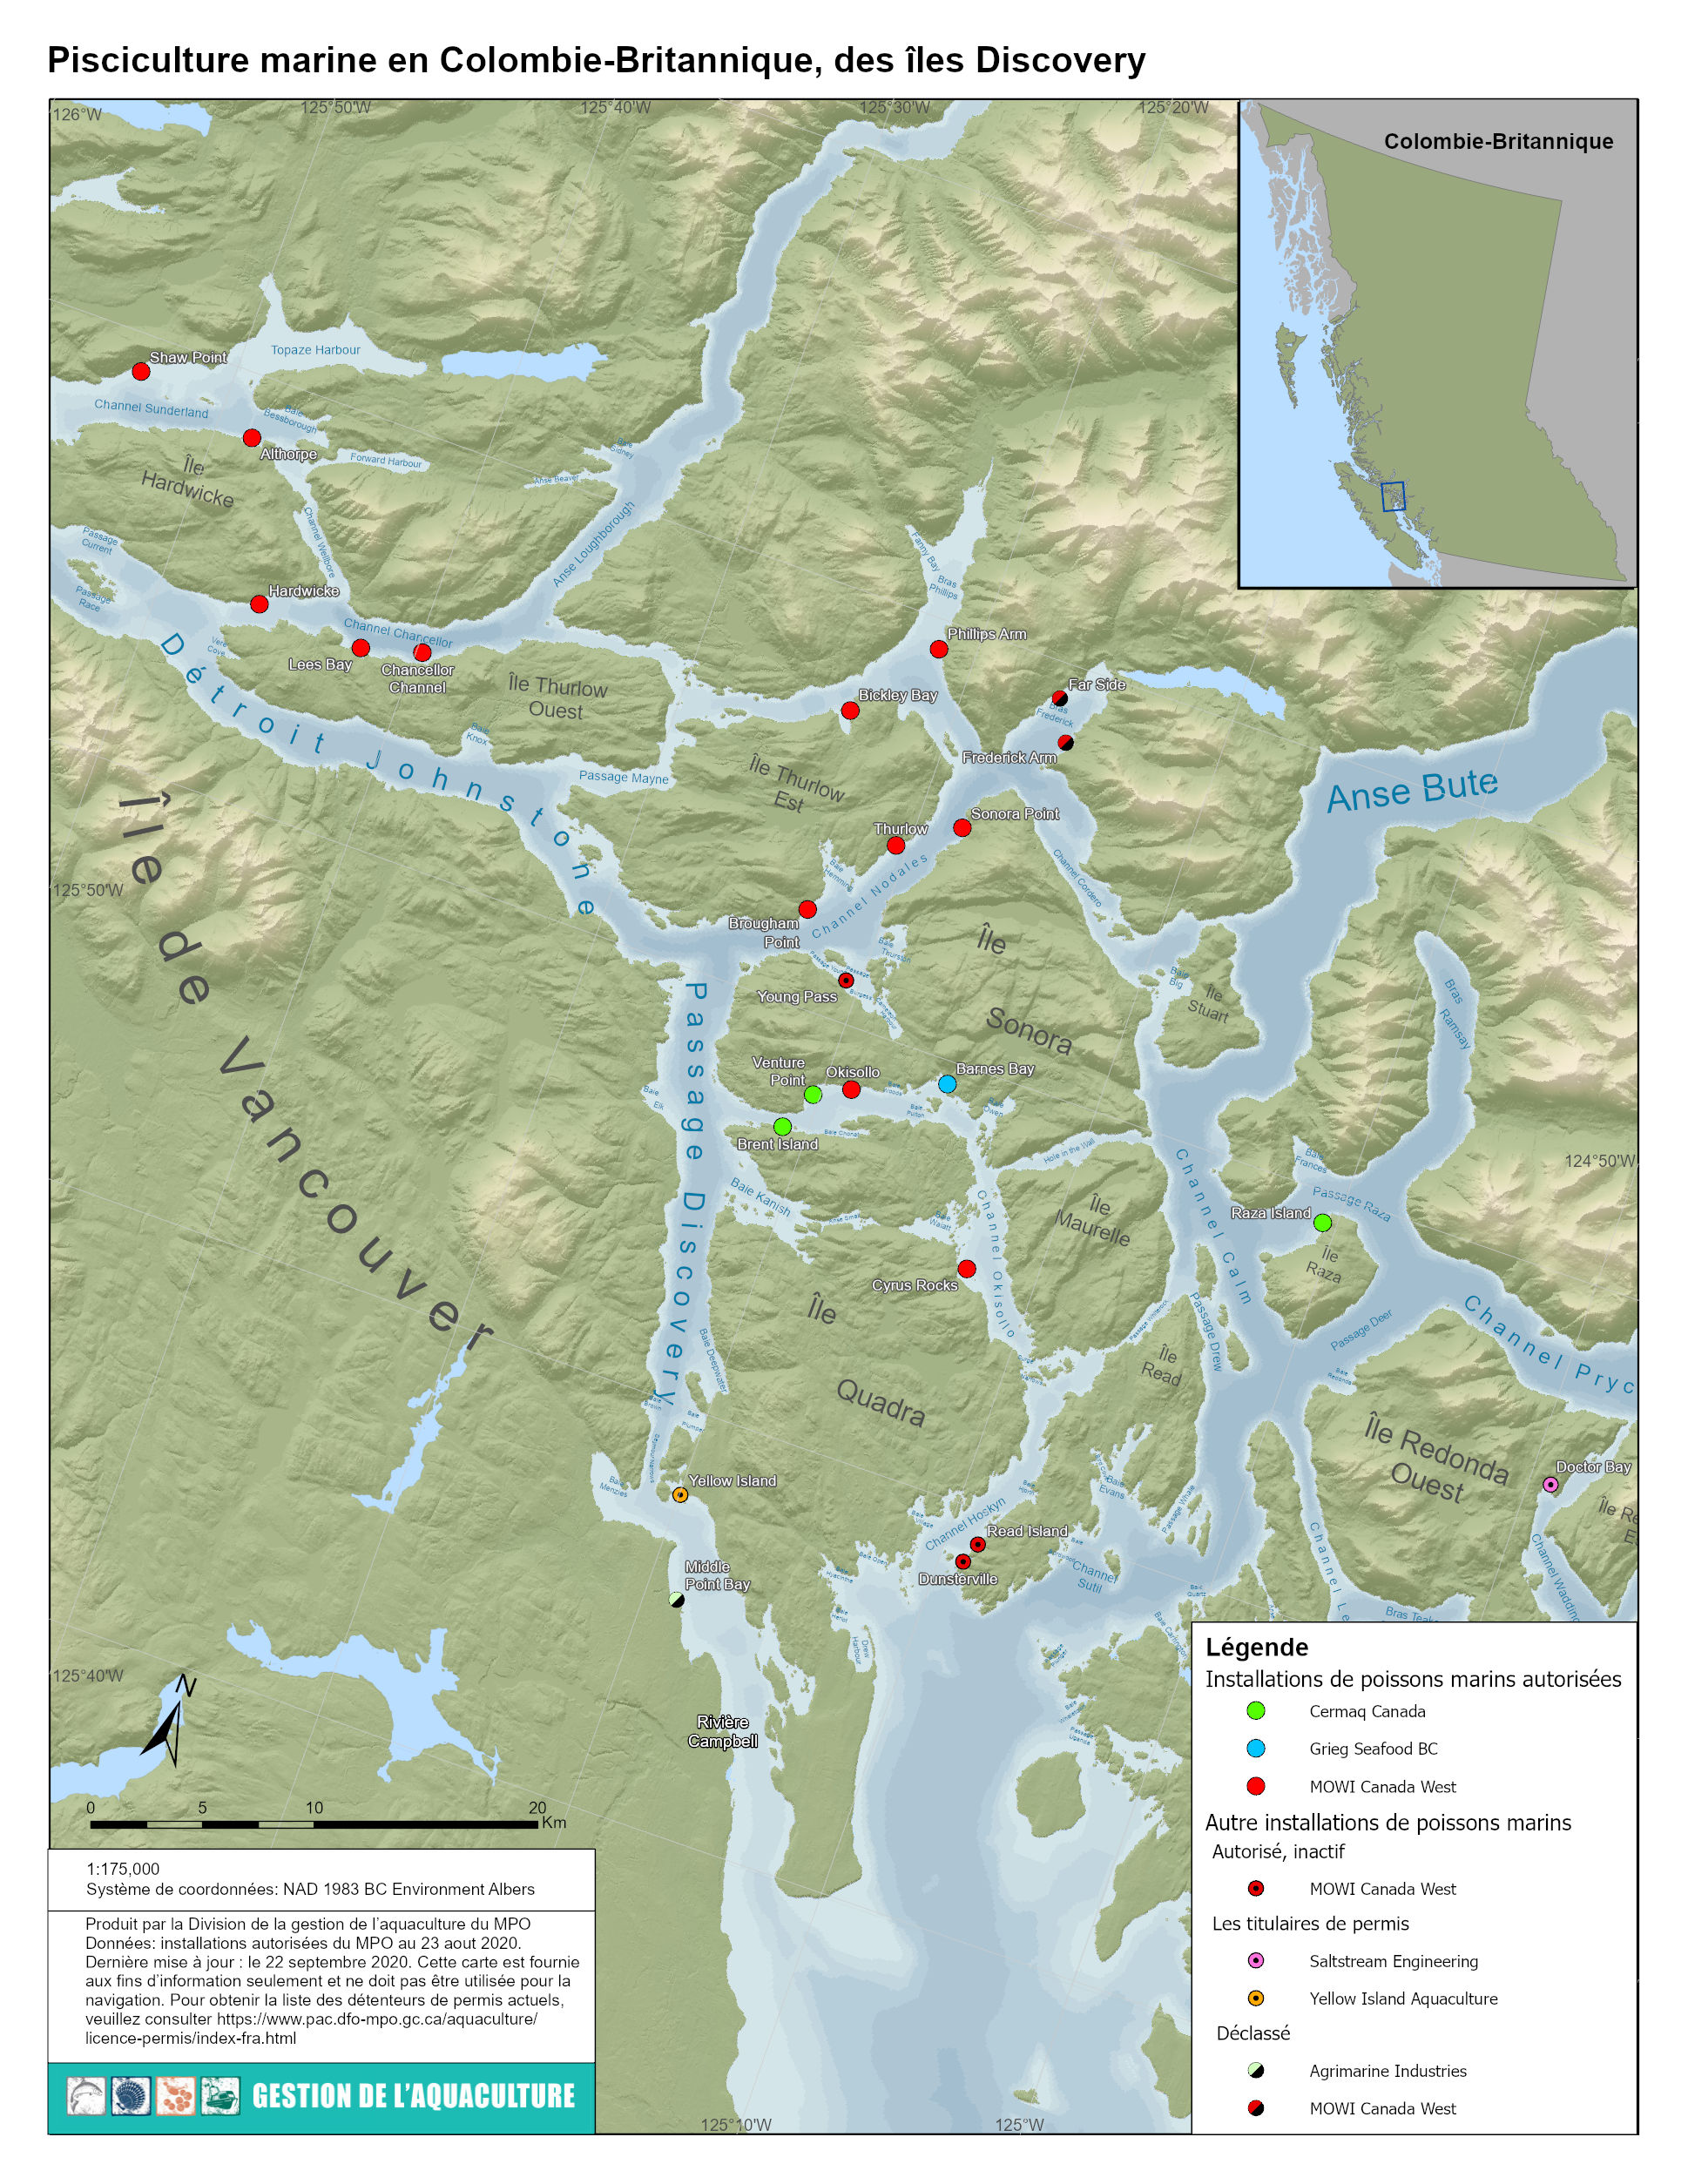 Carte montrant les fermes piscicoles dans la zone du passage Discovery (2020)